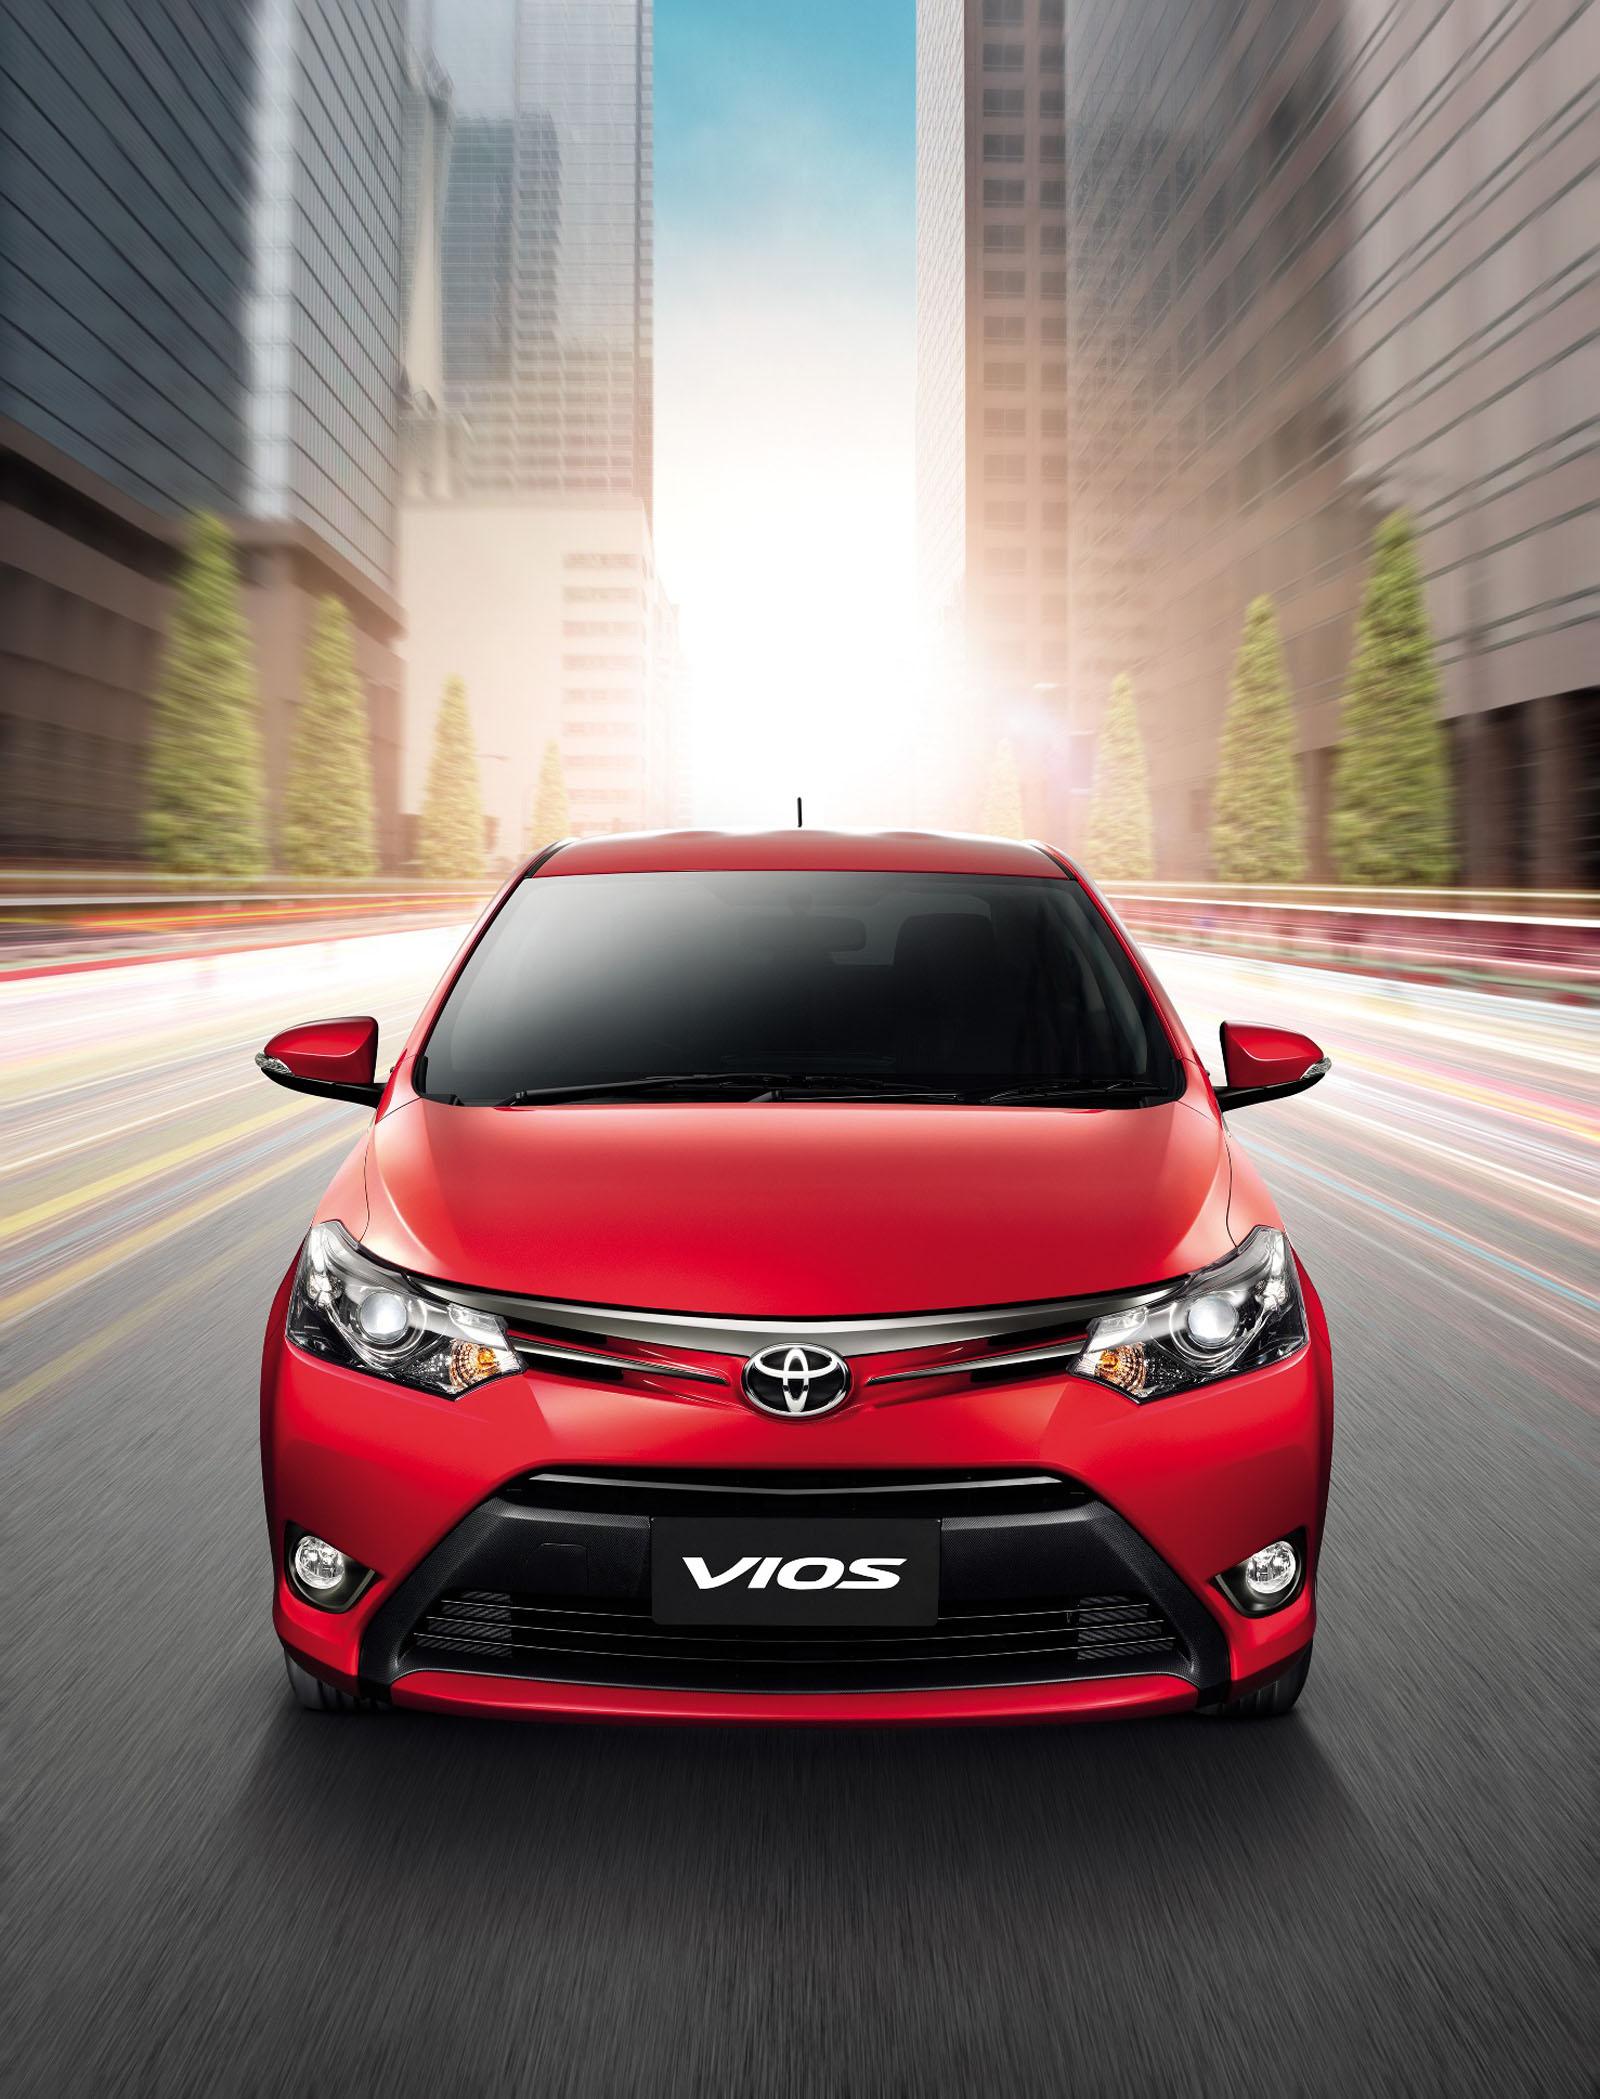 Иномарка стоимость. Тойота Виос 2015. Toyota Vios 2014. Тойота Виос 3. Toyota Vios 2017.